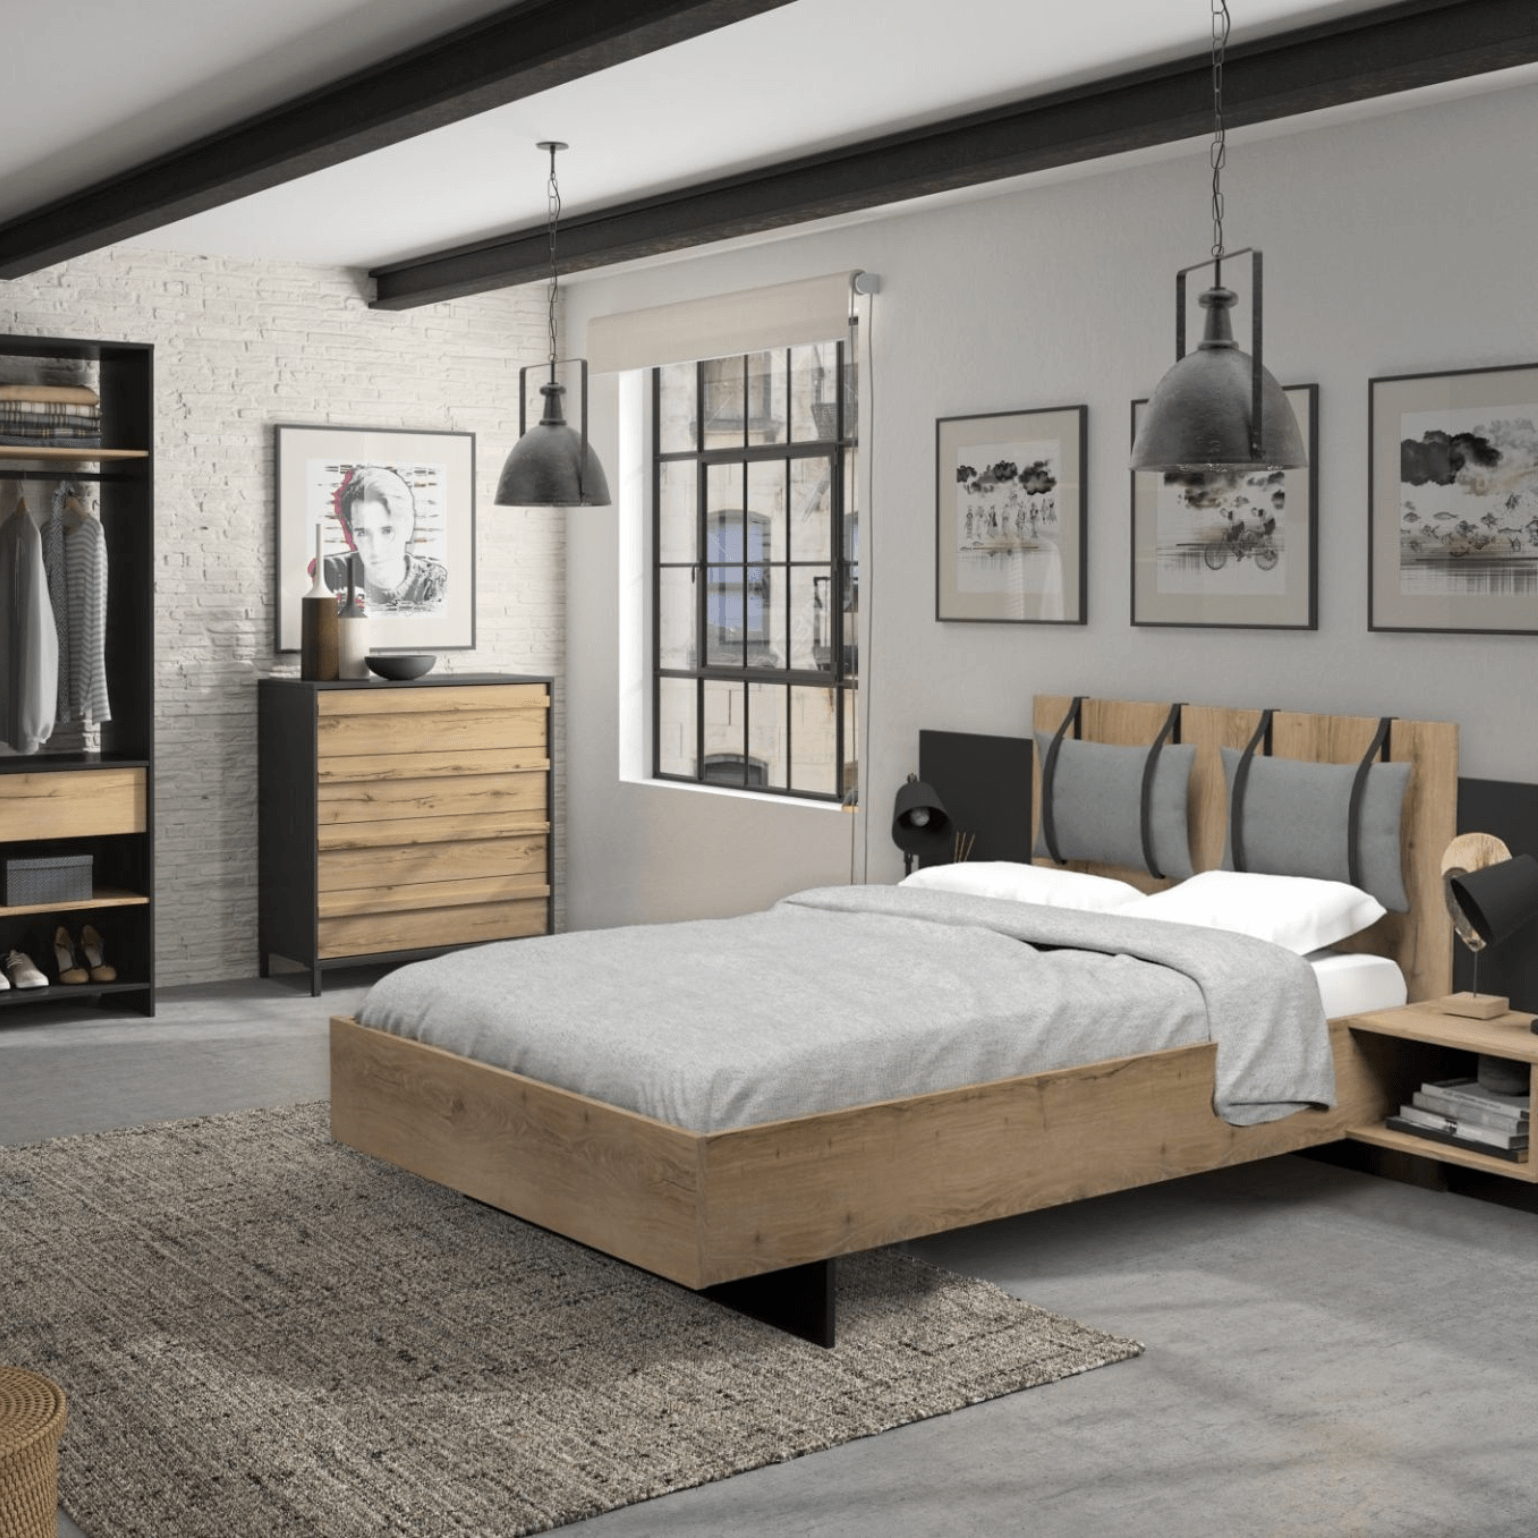 Chambre à coucher 4 pièces MIMIZAN au look industriel moderne, imitation bois de chêne Helvezia combiné avec des contrastes en noir